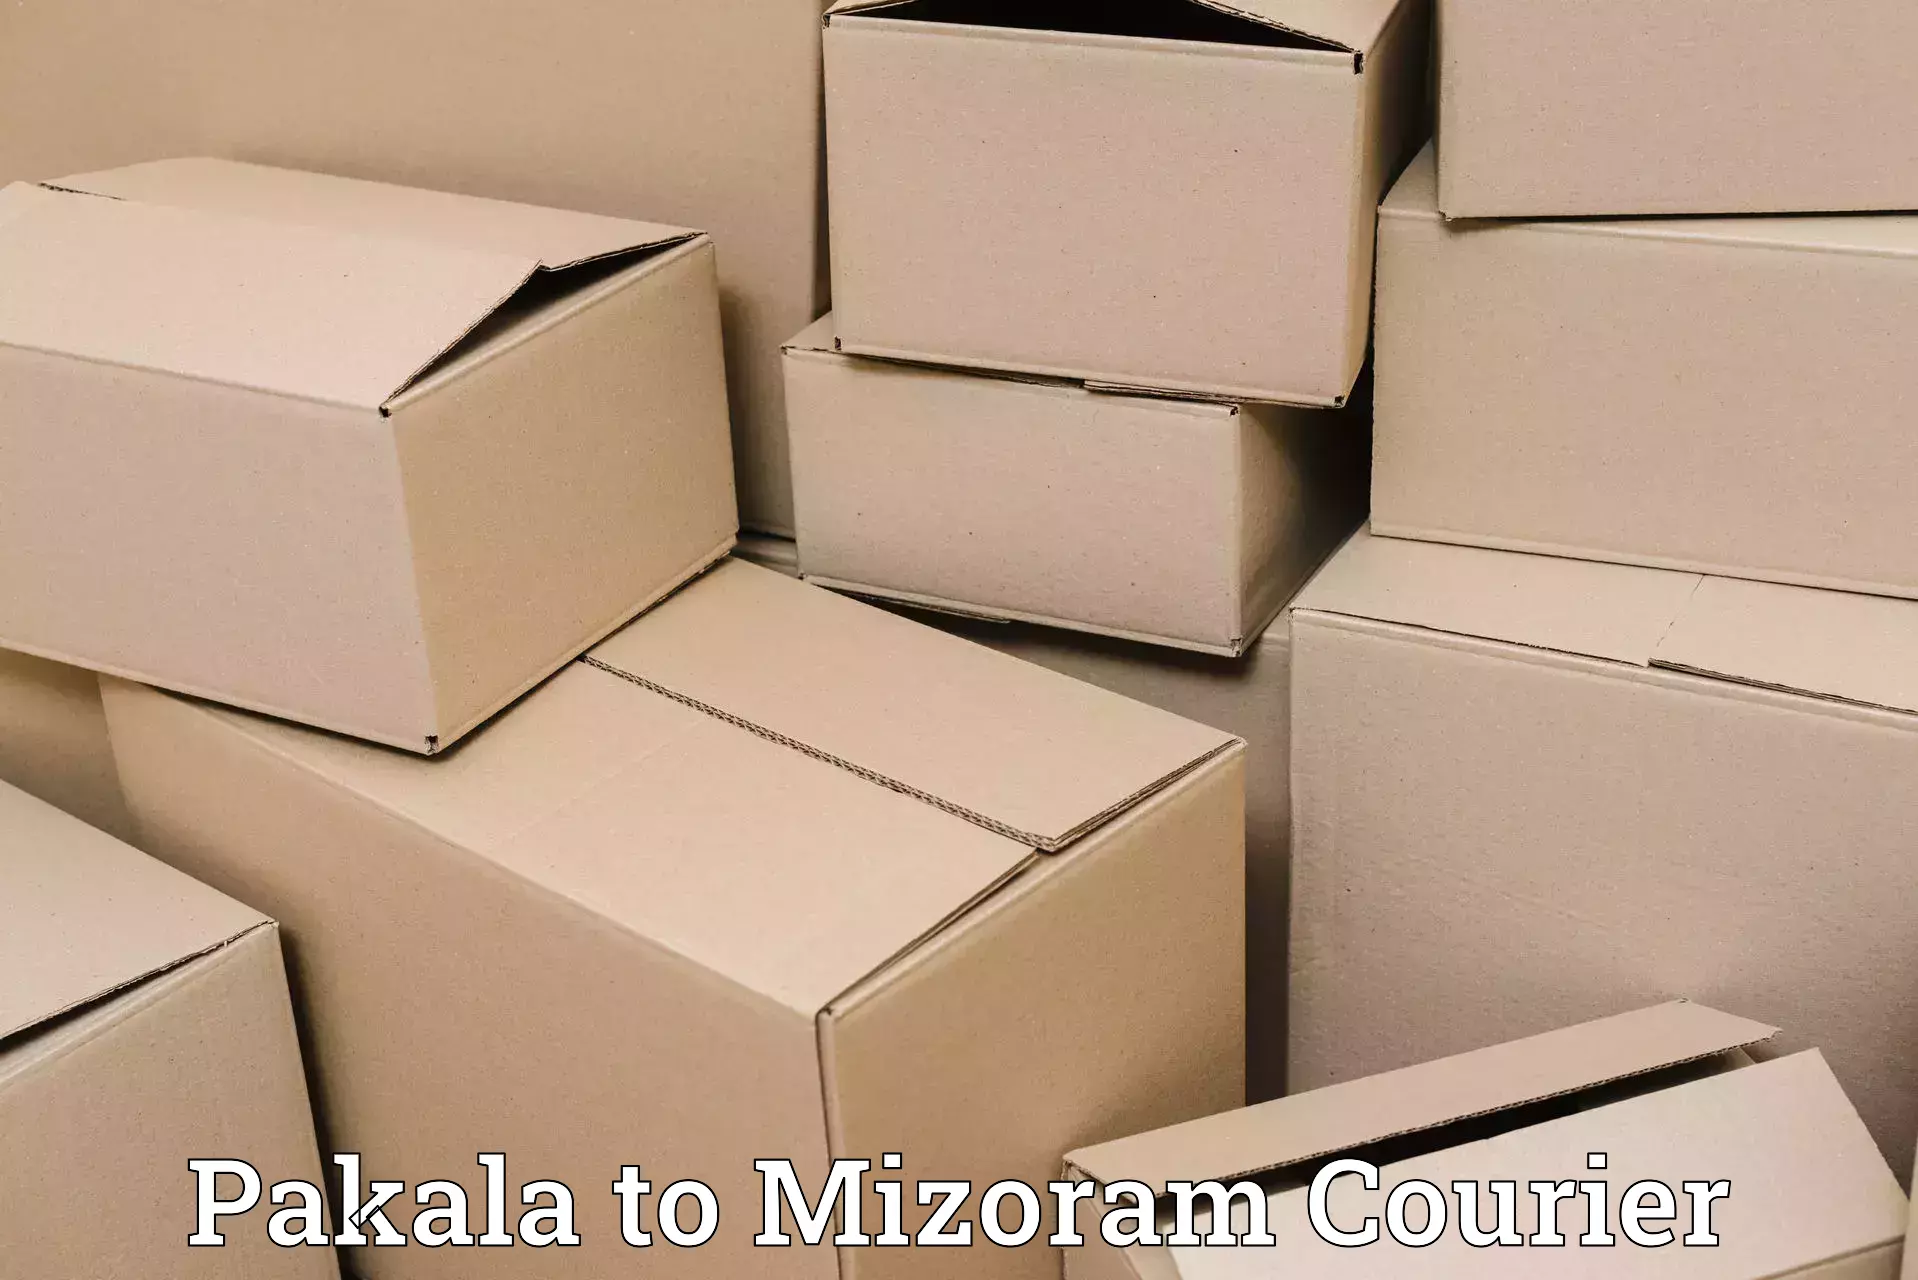 Seamless shipping experience Pakala to NIT Aizawl